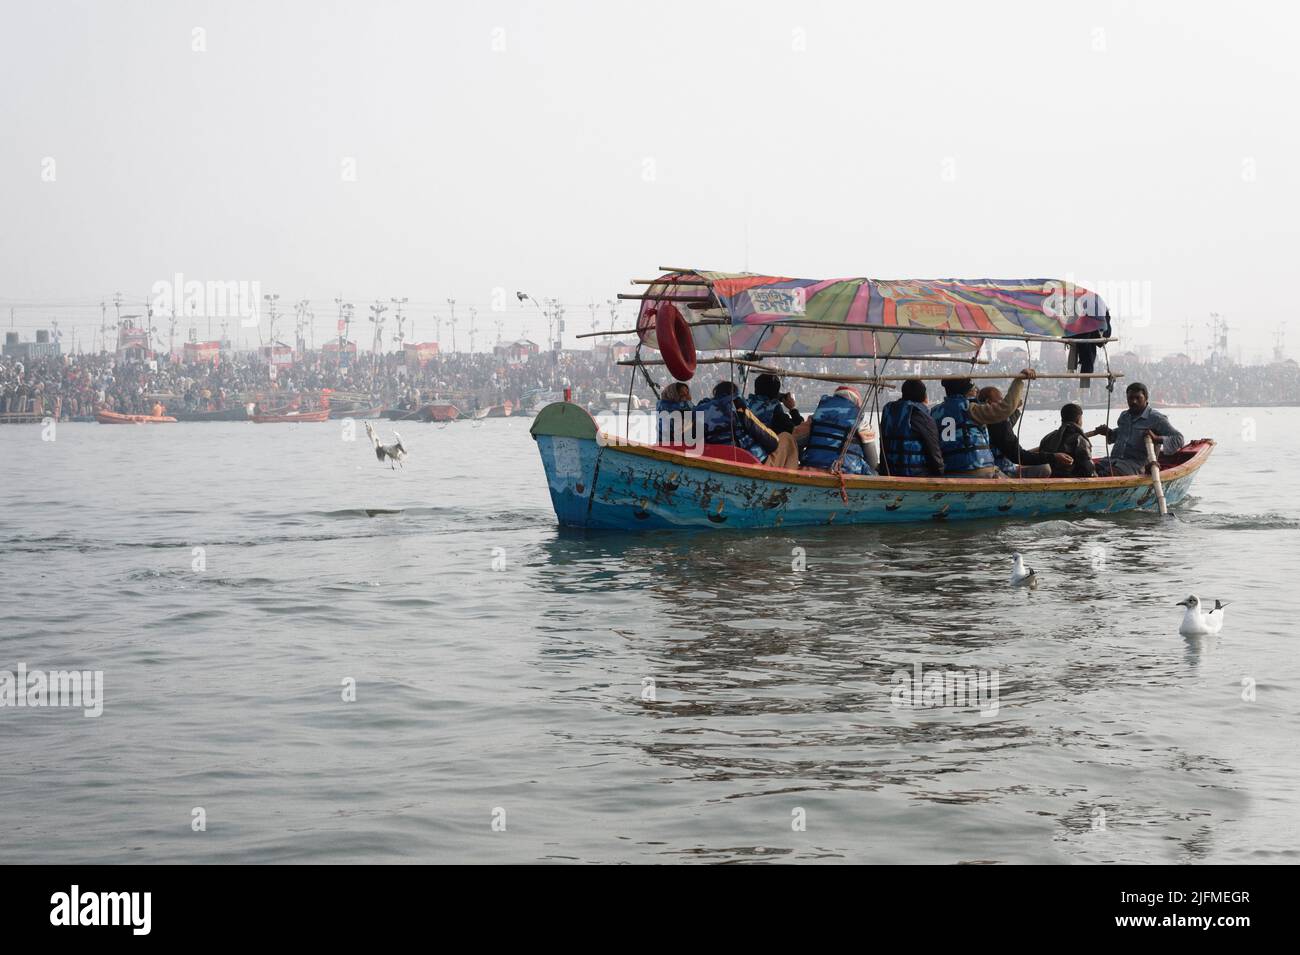 Pilgrims on boats at early morning, Allahabad Kumbh Mela, World’s largest religious gathering, Uttar Pradesh, India Stock Photo